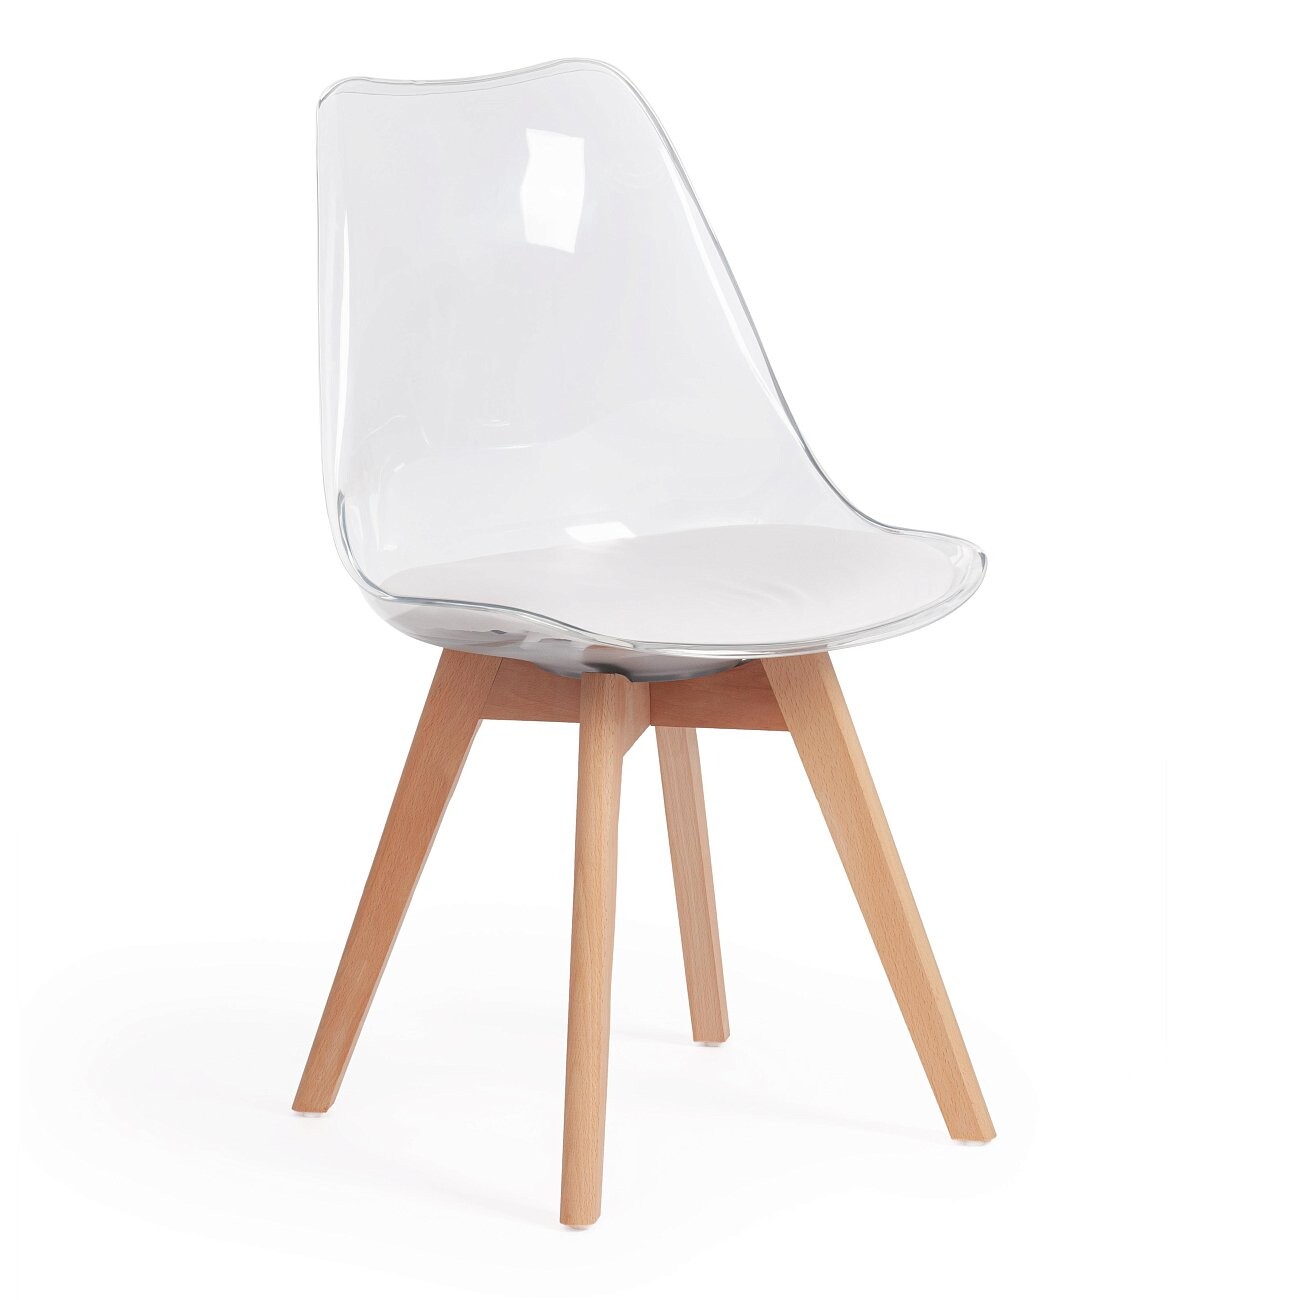 Прозрачный пластиковый стул на деревянных ножках